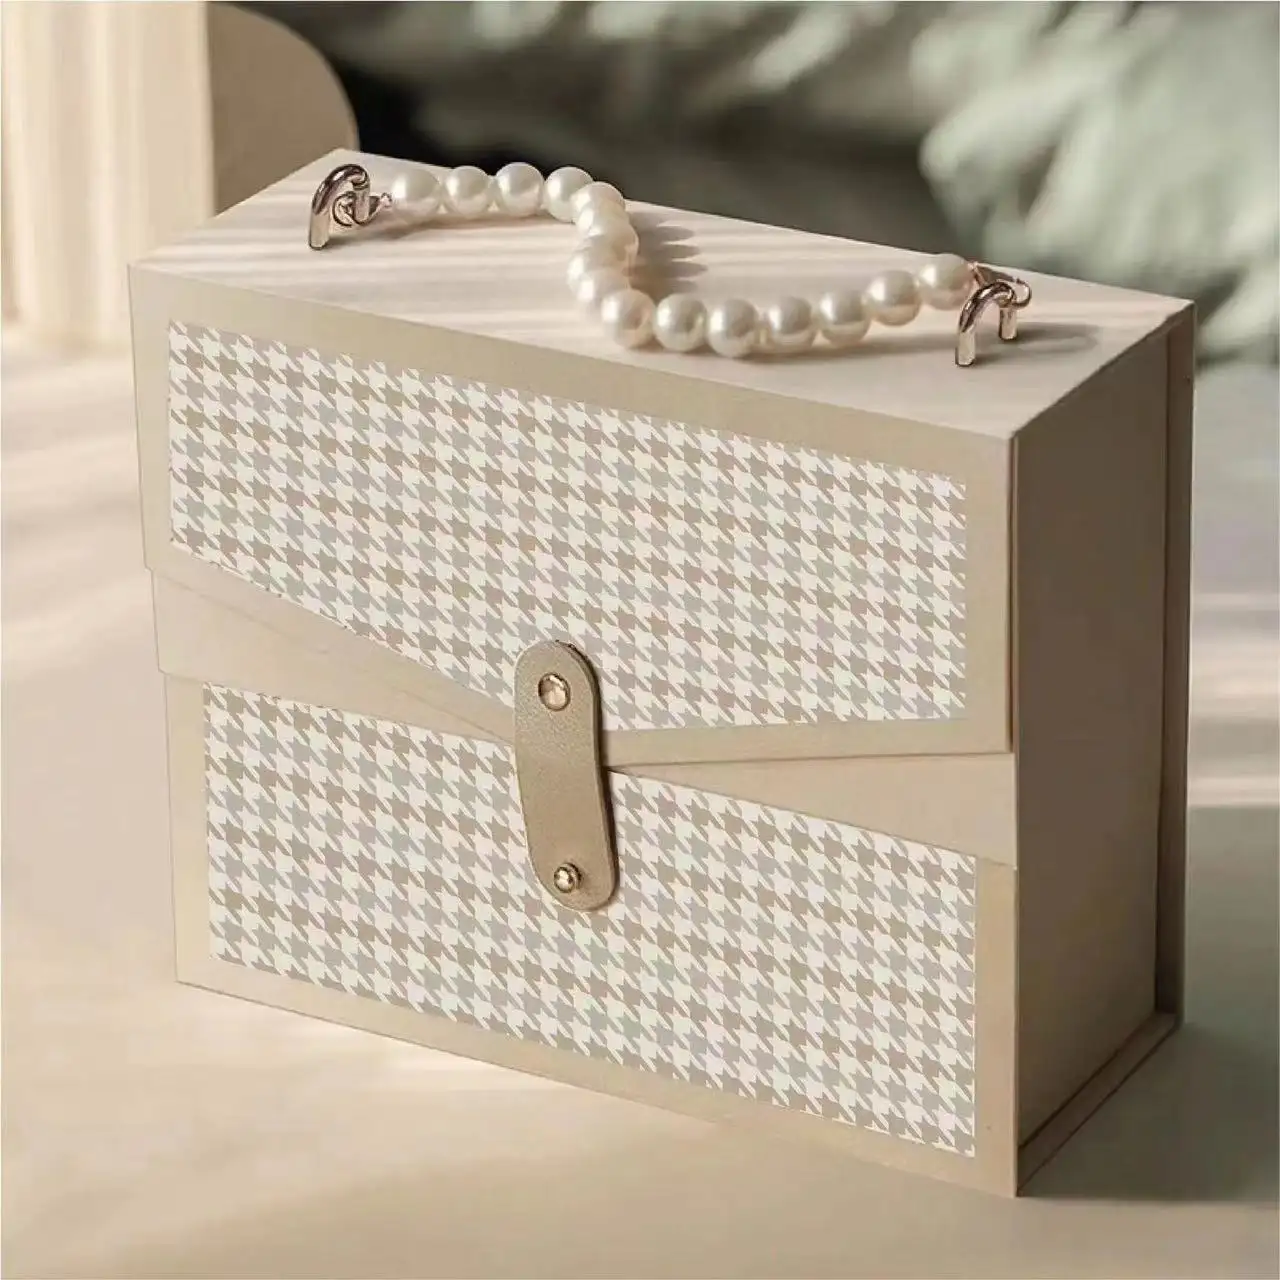 ถุงกระดาษพกพาสายโซ่สำหรับใช้ในวันวาเลนไทน์กล่องของขวัญกล่องใส่ลิปสติกแบบถือมุกกล่องเปล่าใส่มือหรูหรา